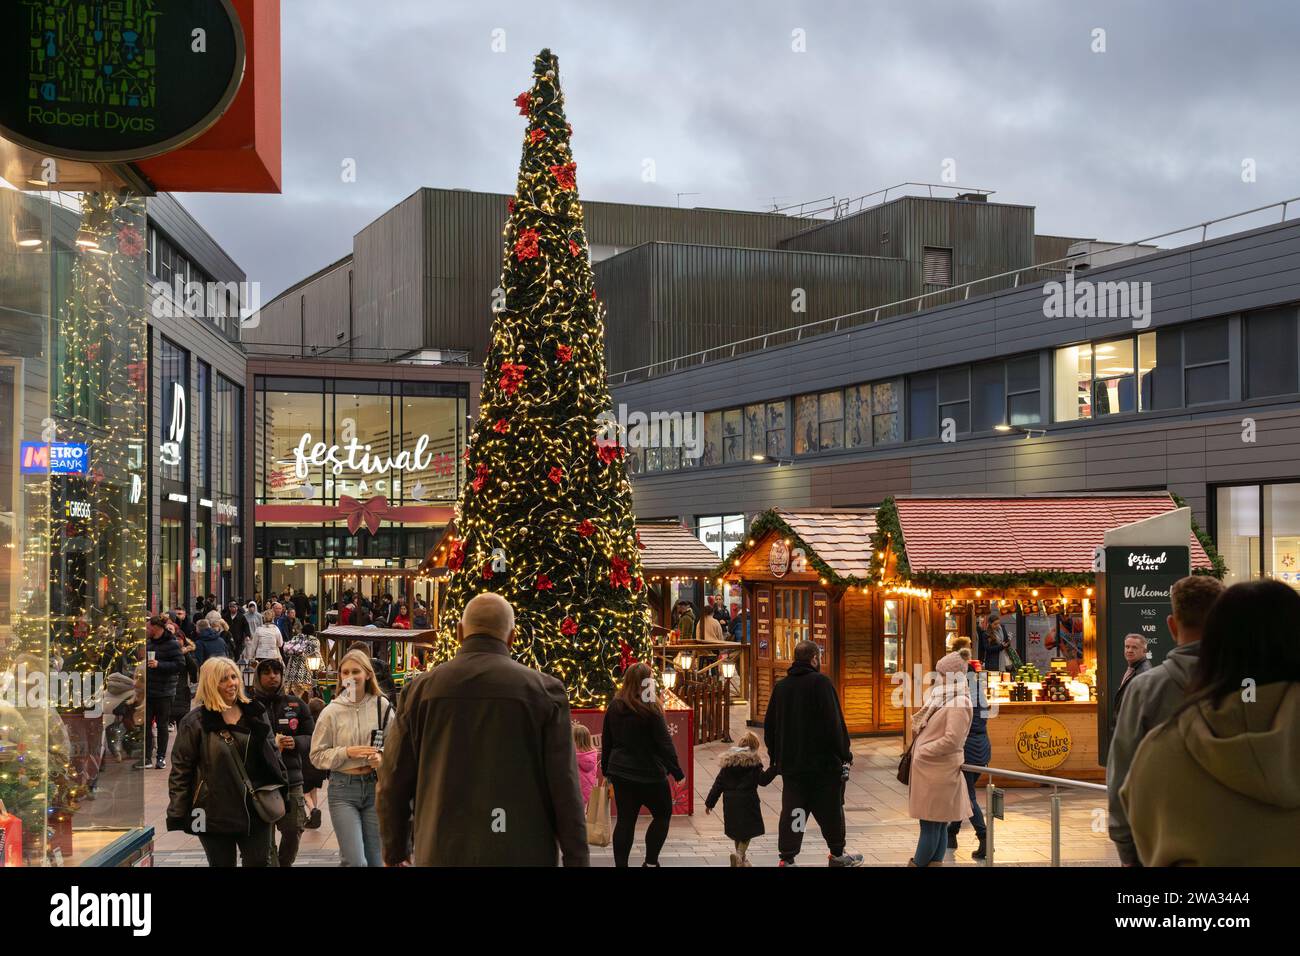 Weihnachtseinkäufer, Marktstände und Weihnachtsbaum im Einkaufszentrum Malls vor dem Festival Place in der Abenddämmerung. Basingstoke, Großbritannien Stockfoto